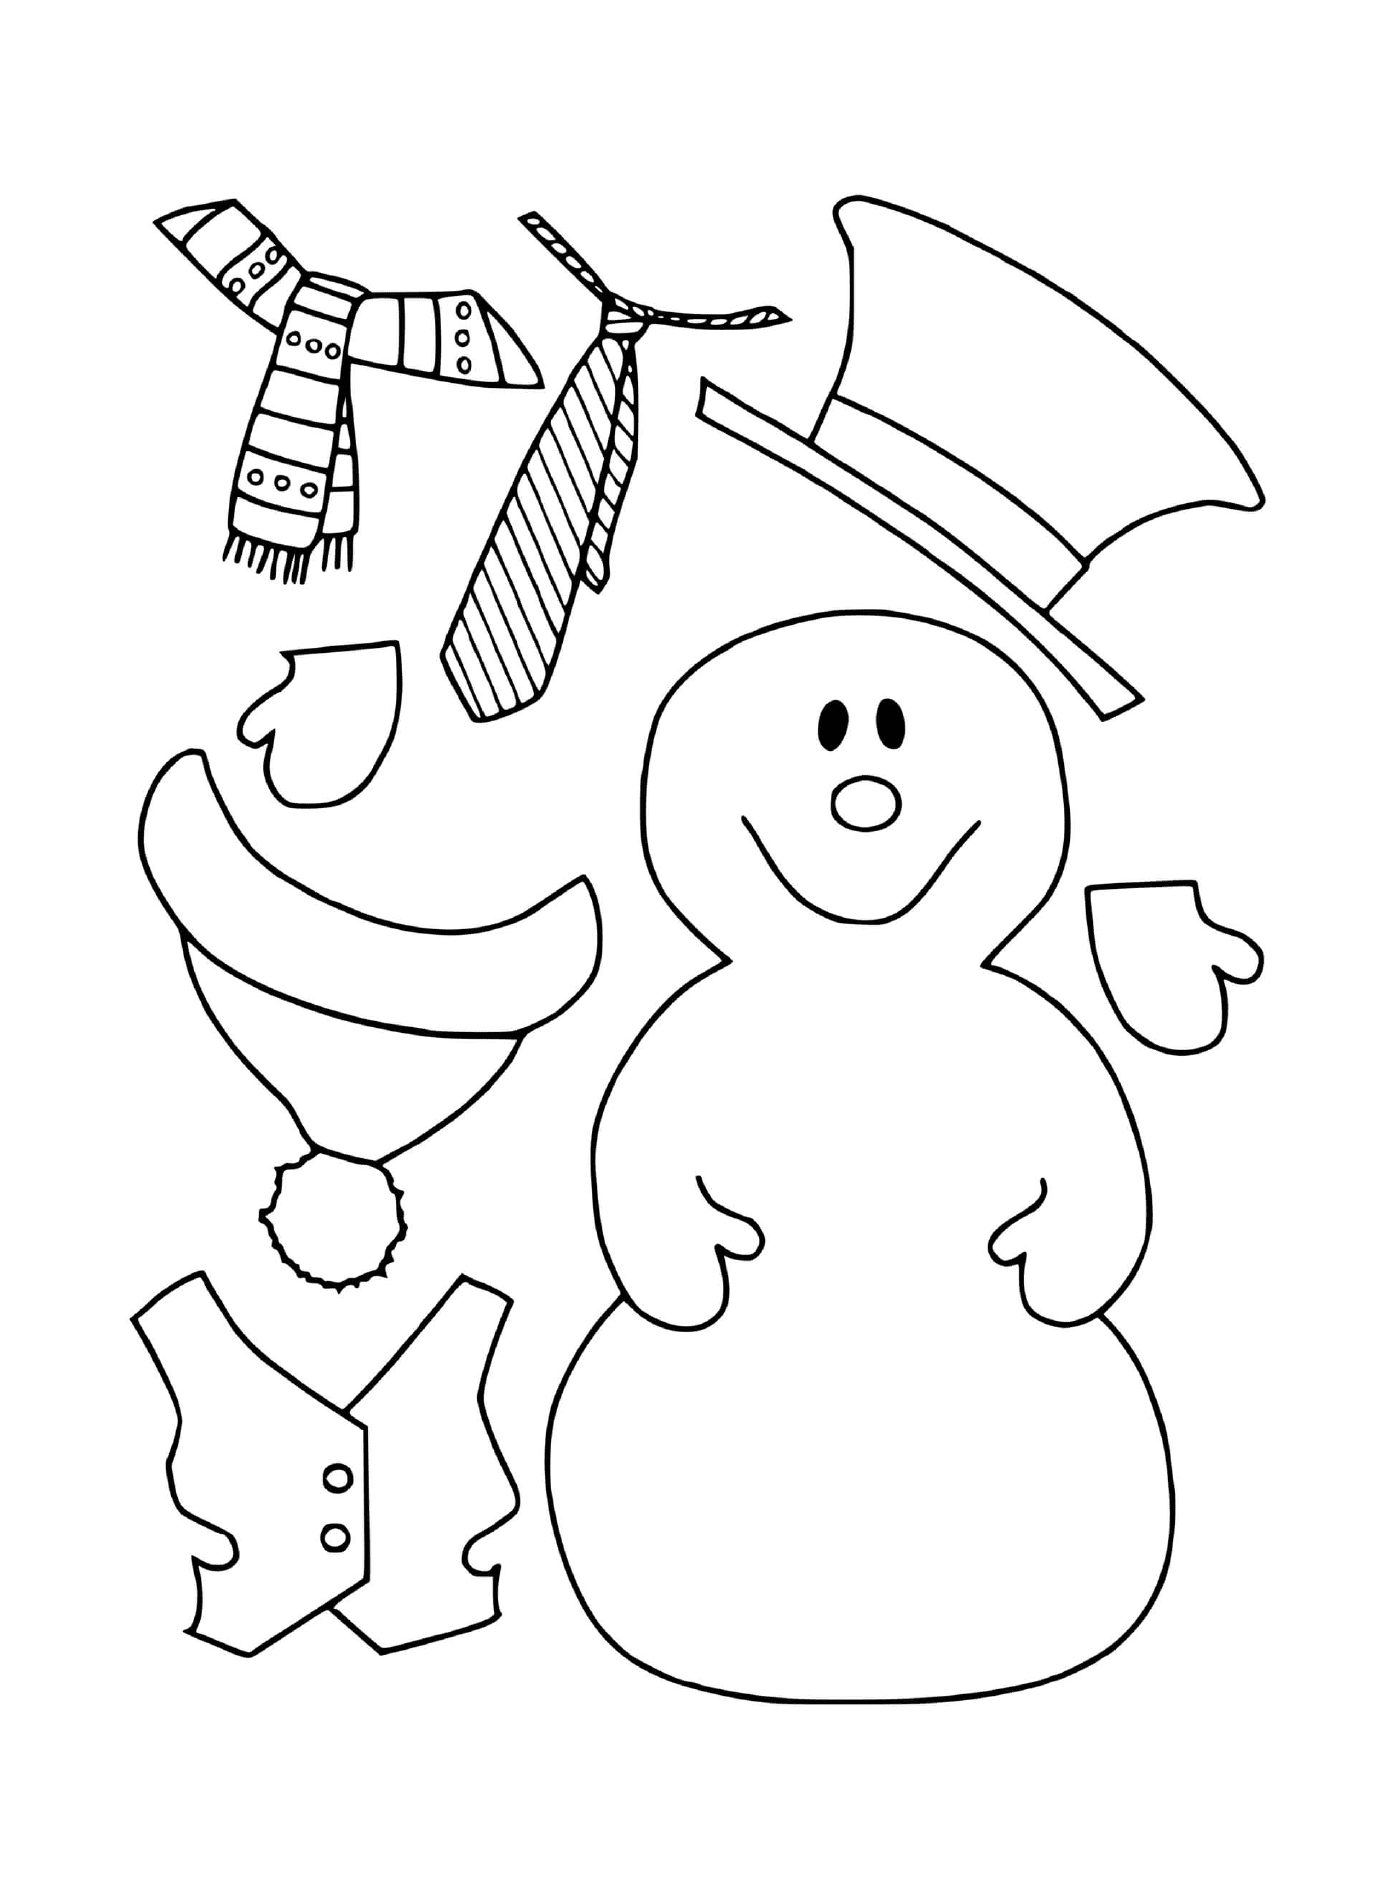   Hiver maternelle, bonhomme de neige avec ses habits 